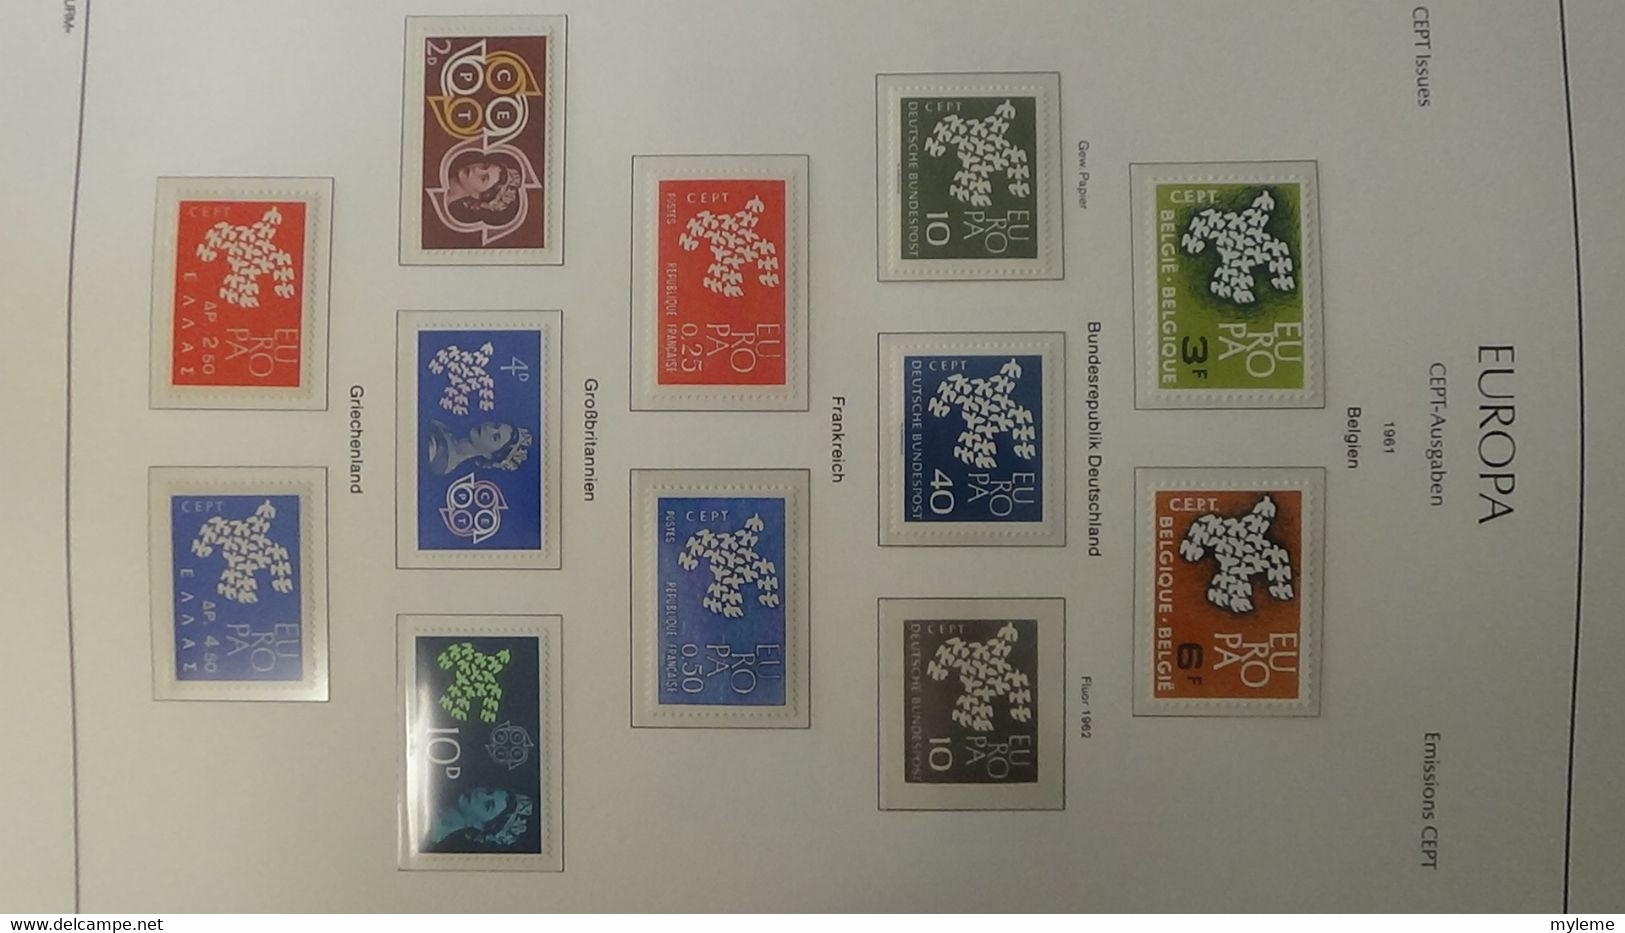 Z156 Très belle collection Europa en reliure LEUCHTTURM timbres et blocs ** en 4 volumes. Volume 1/4 de 1957 à 1977